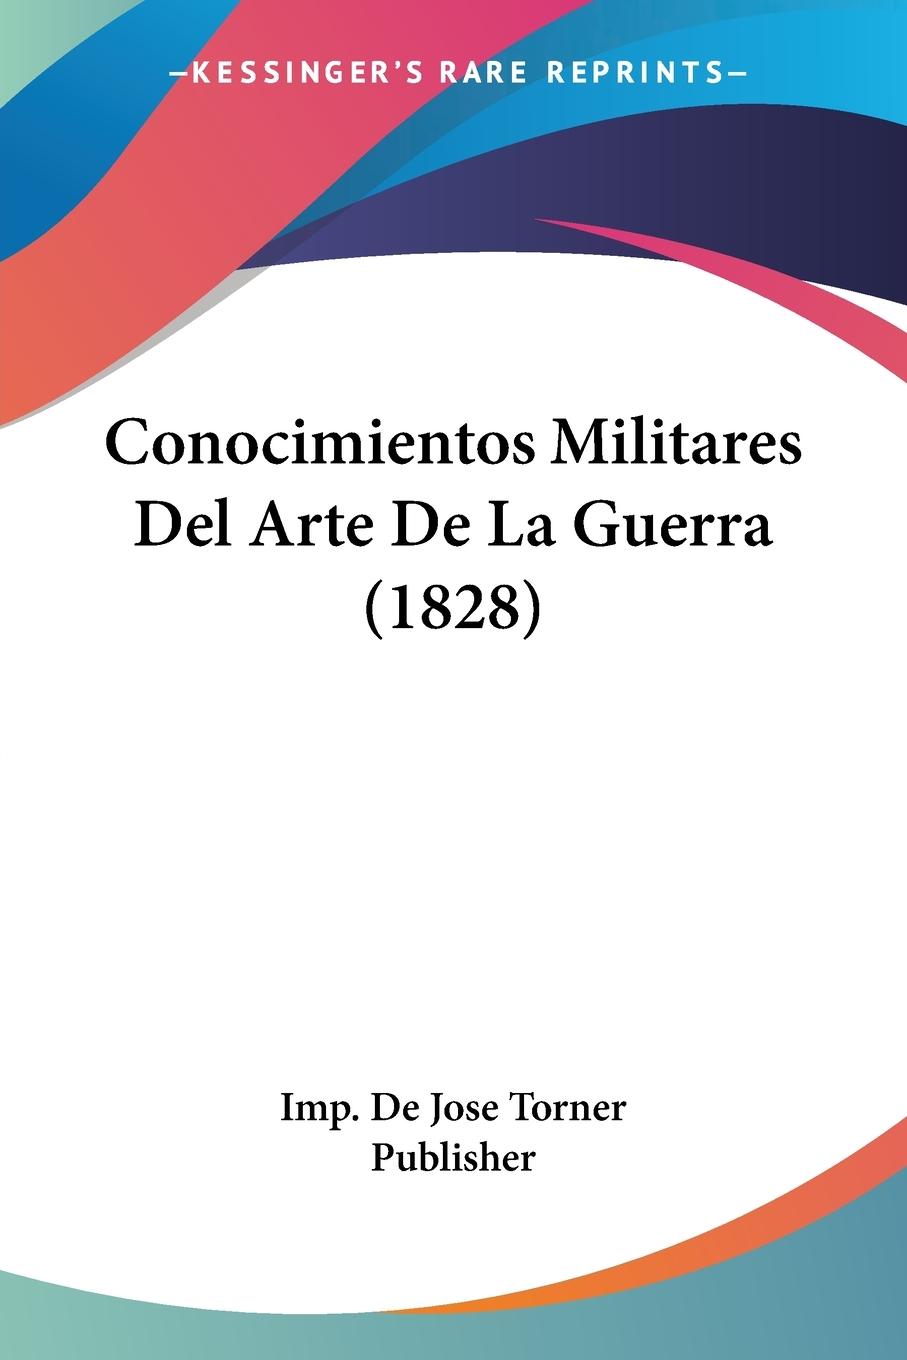 Conocimientos Militares Del Arte De La Guerra (1828) - Imp. de Jose Torner Publisher